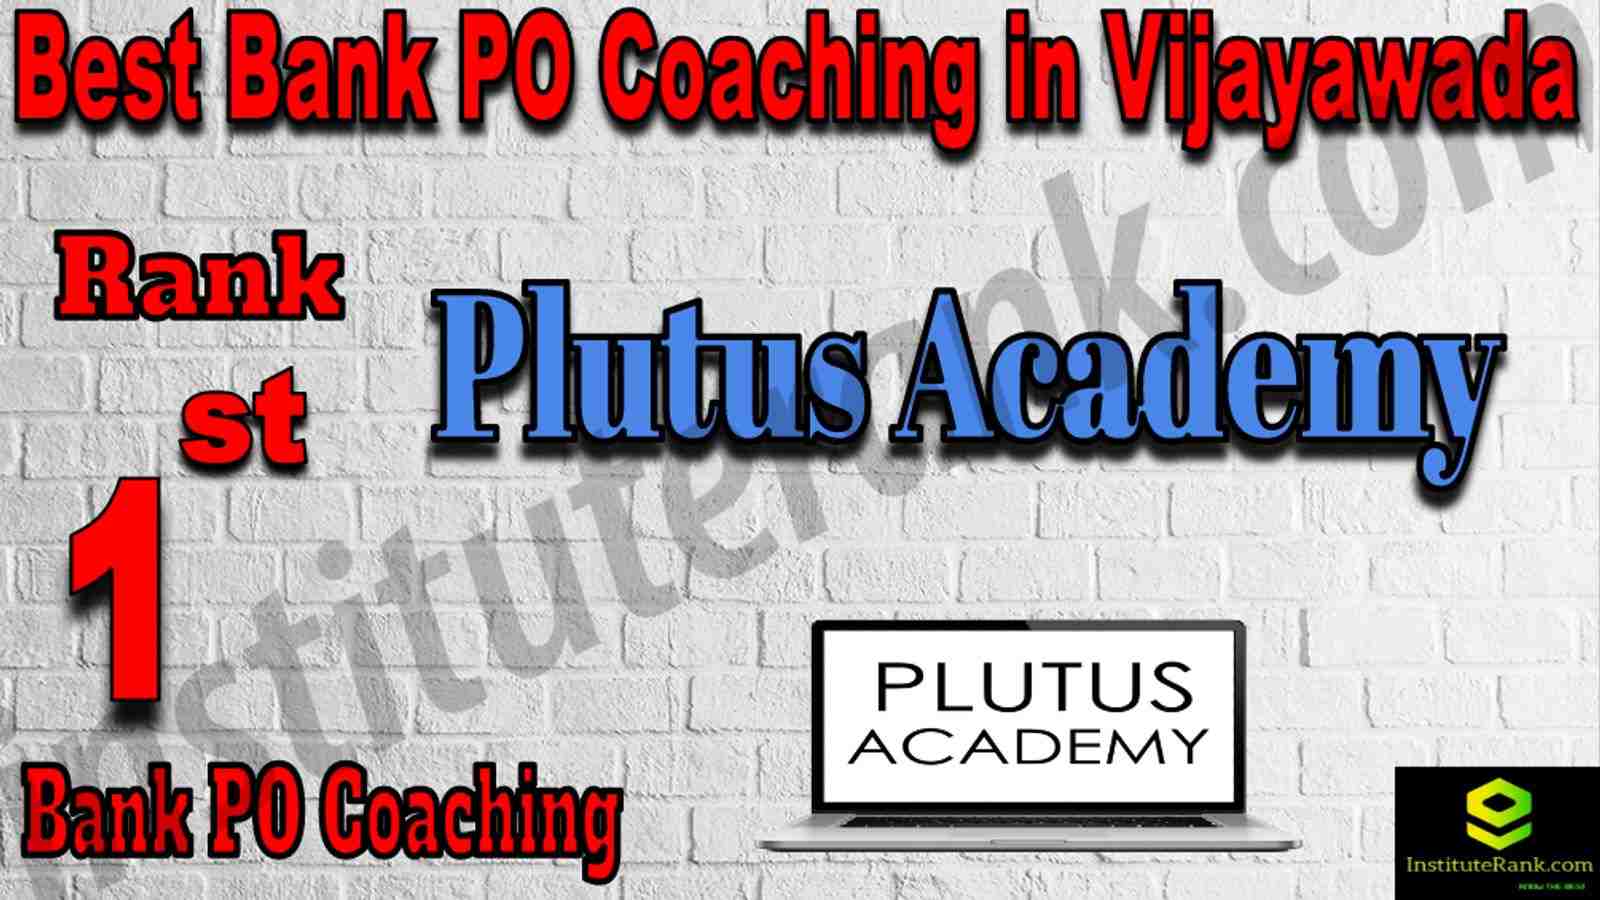 1st Best Bank PO Coaching in Vijayawada